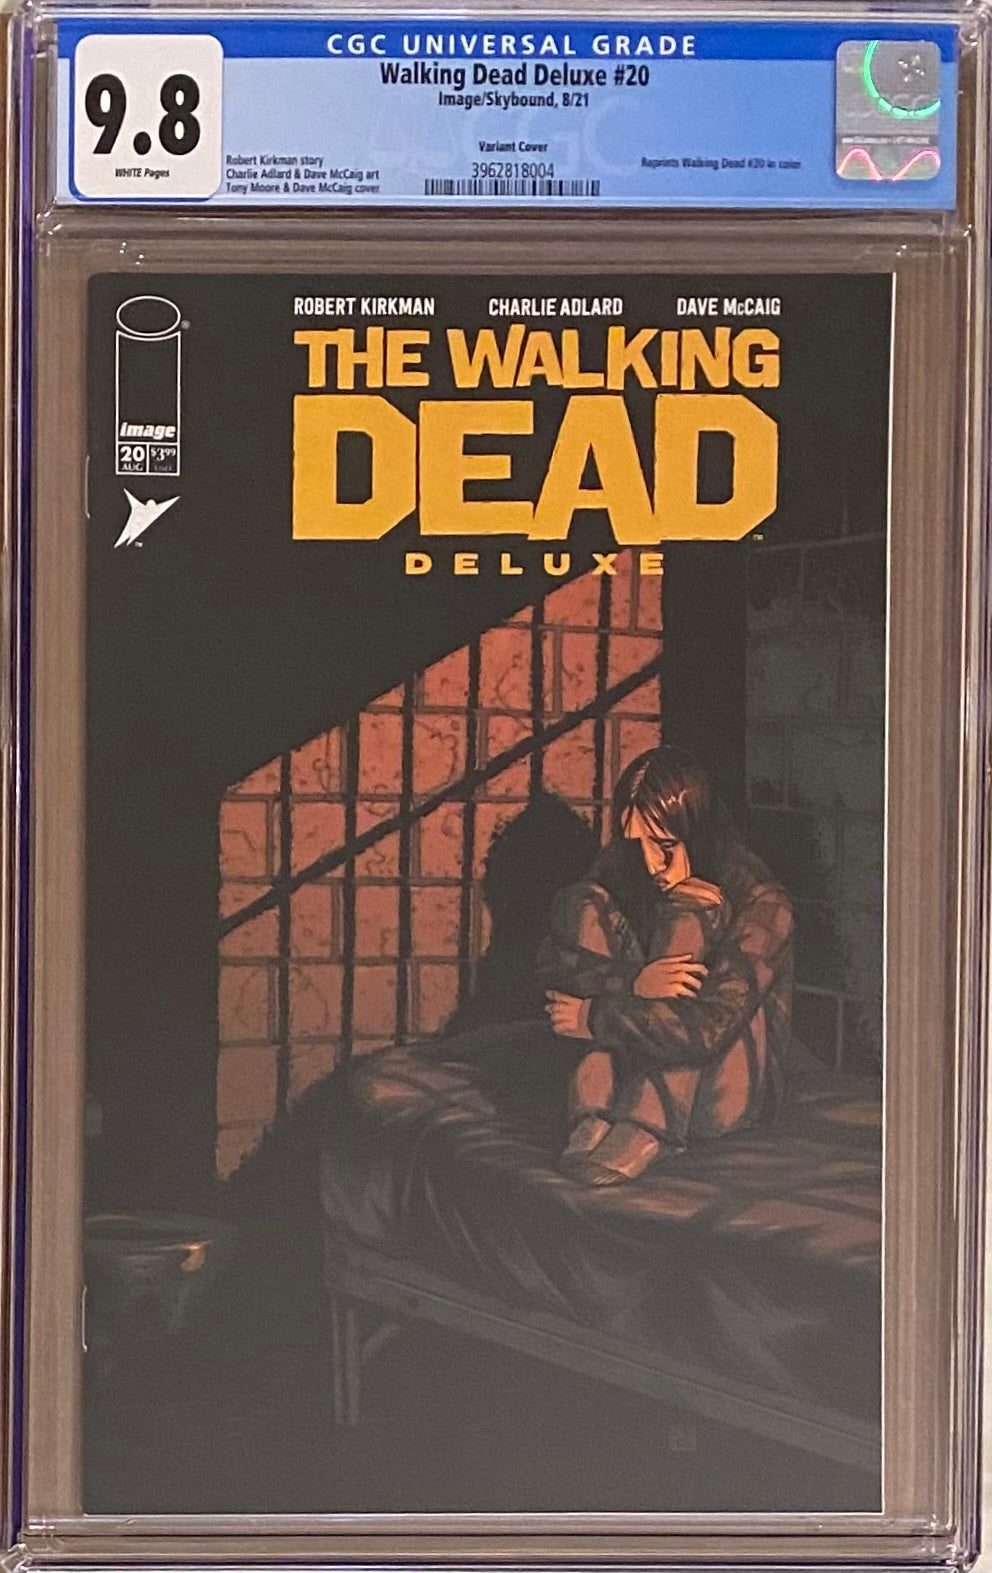 Walking Dead Deluxe #20 Variant CGC 9.8